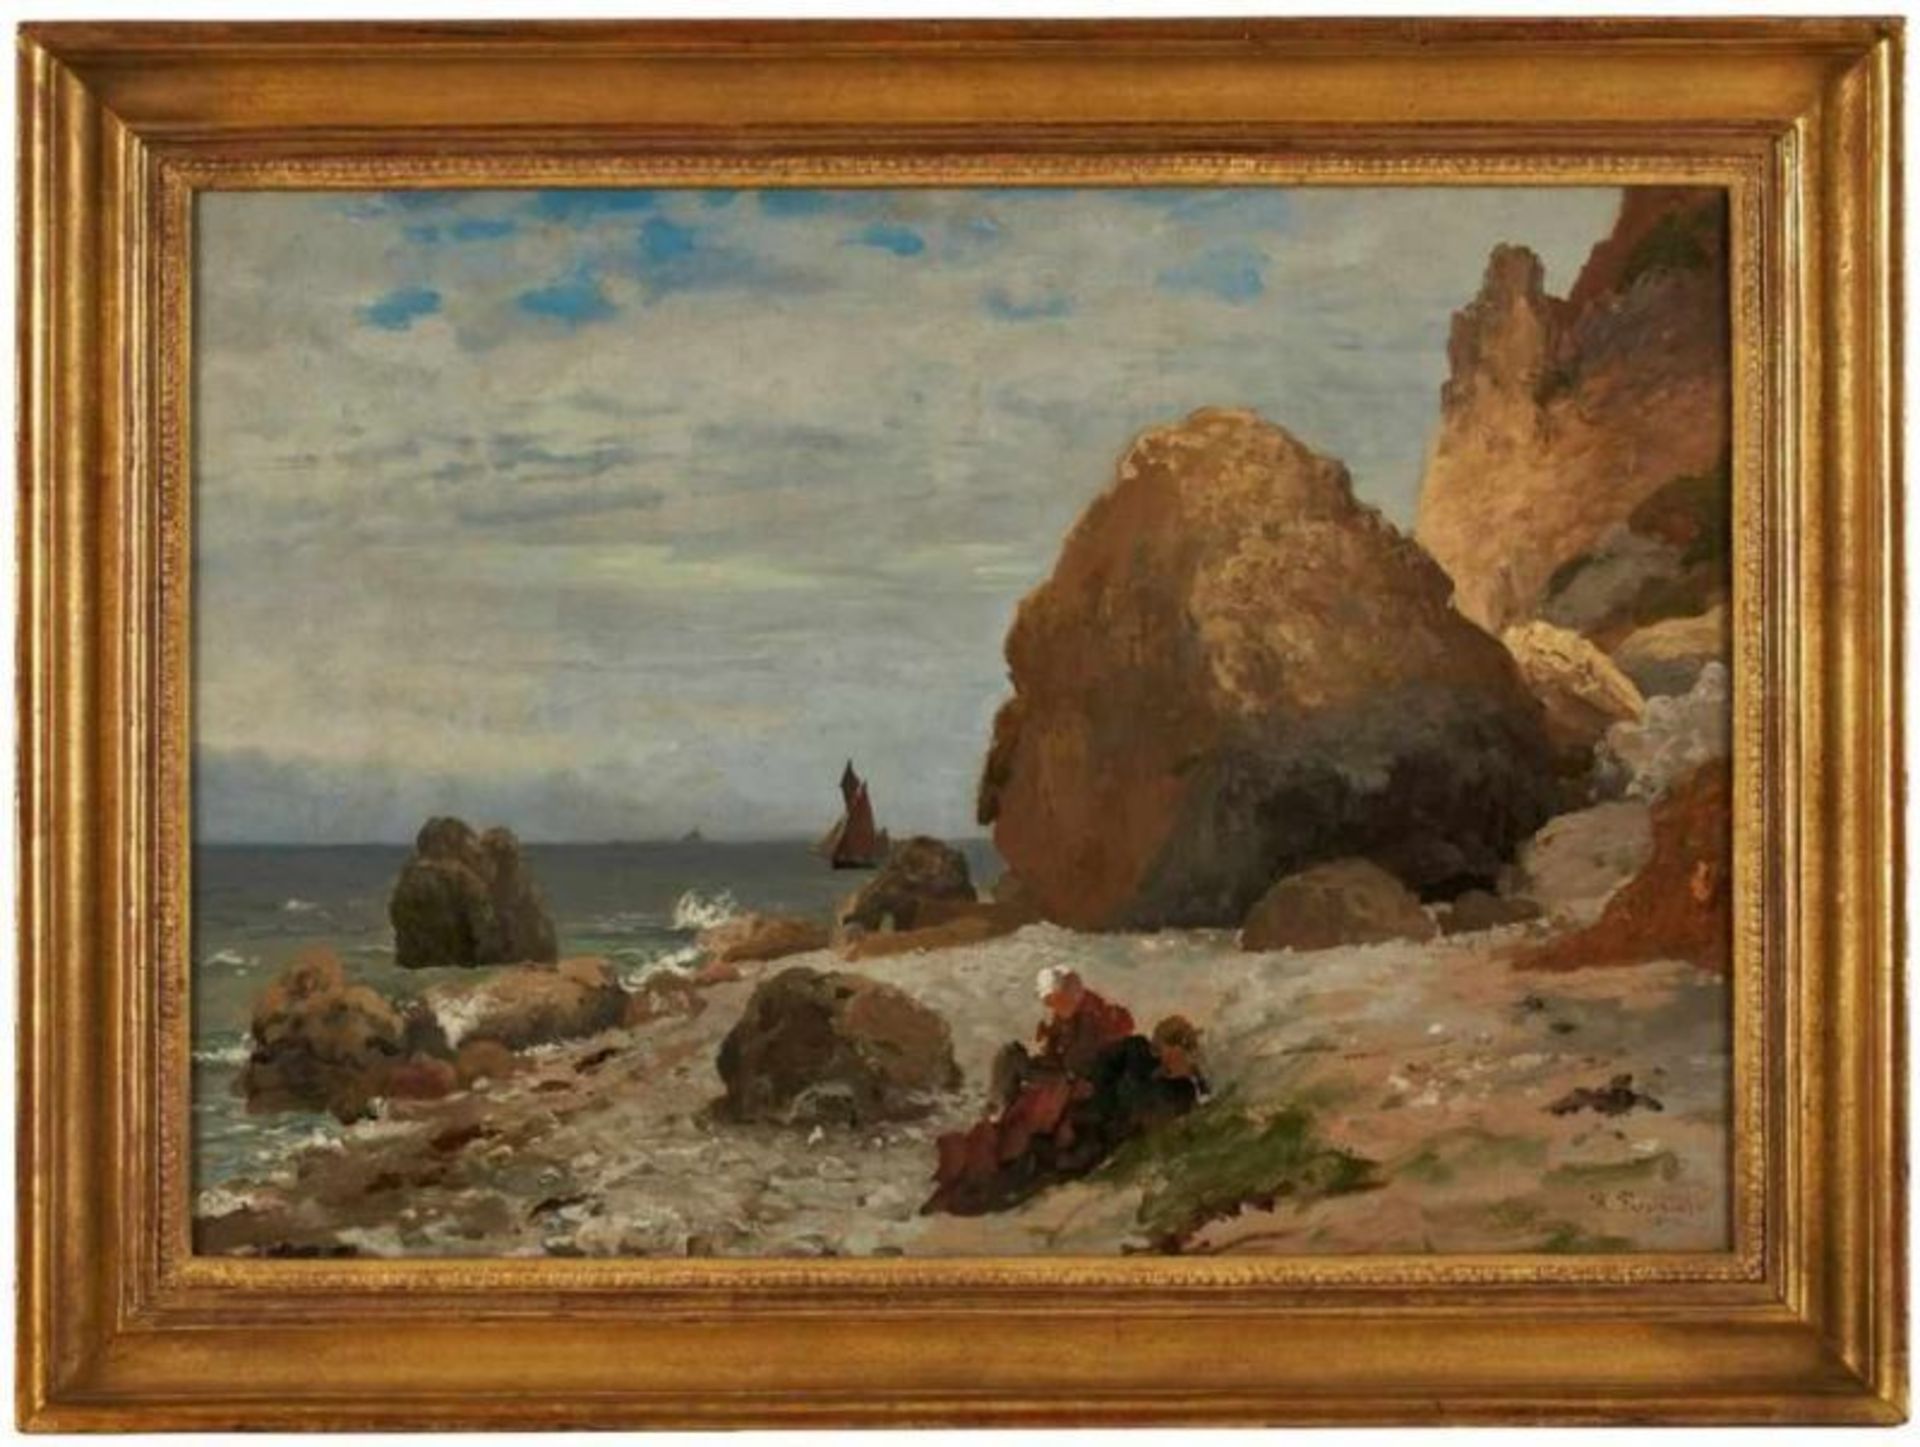 Gemälde Richard Fresenius 1844 Frankfurt - 1903 Monte Carlo Landschaftsmaler. Studium der Malerei am - Bild 3 aus 3